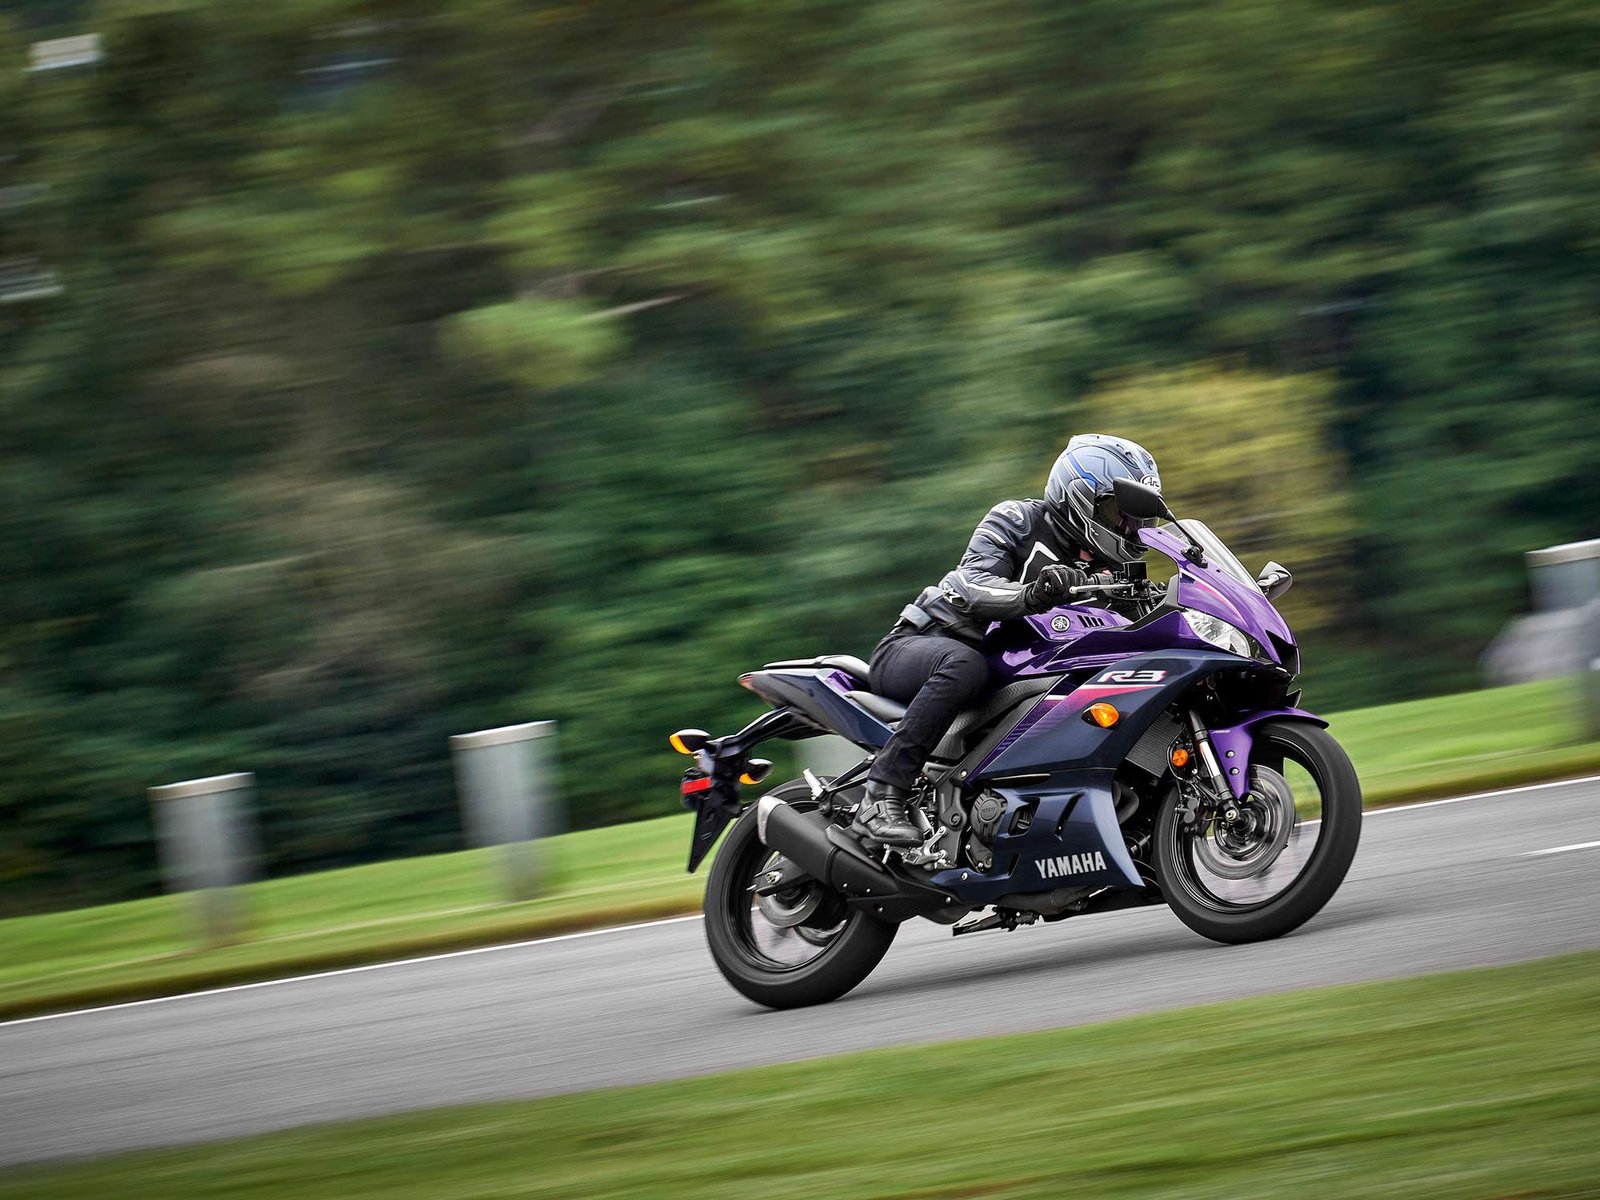 Le violet n'est pas si courant sur une moto d'origine, mais le R3 le travaille.